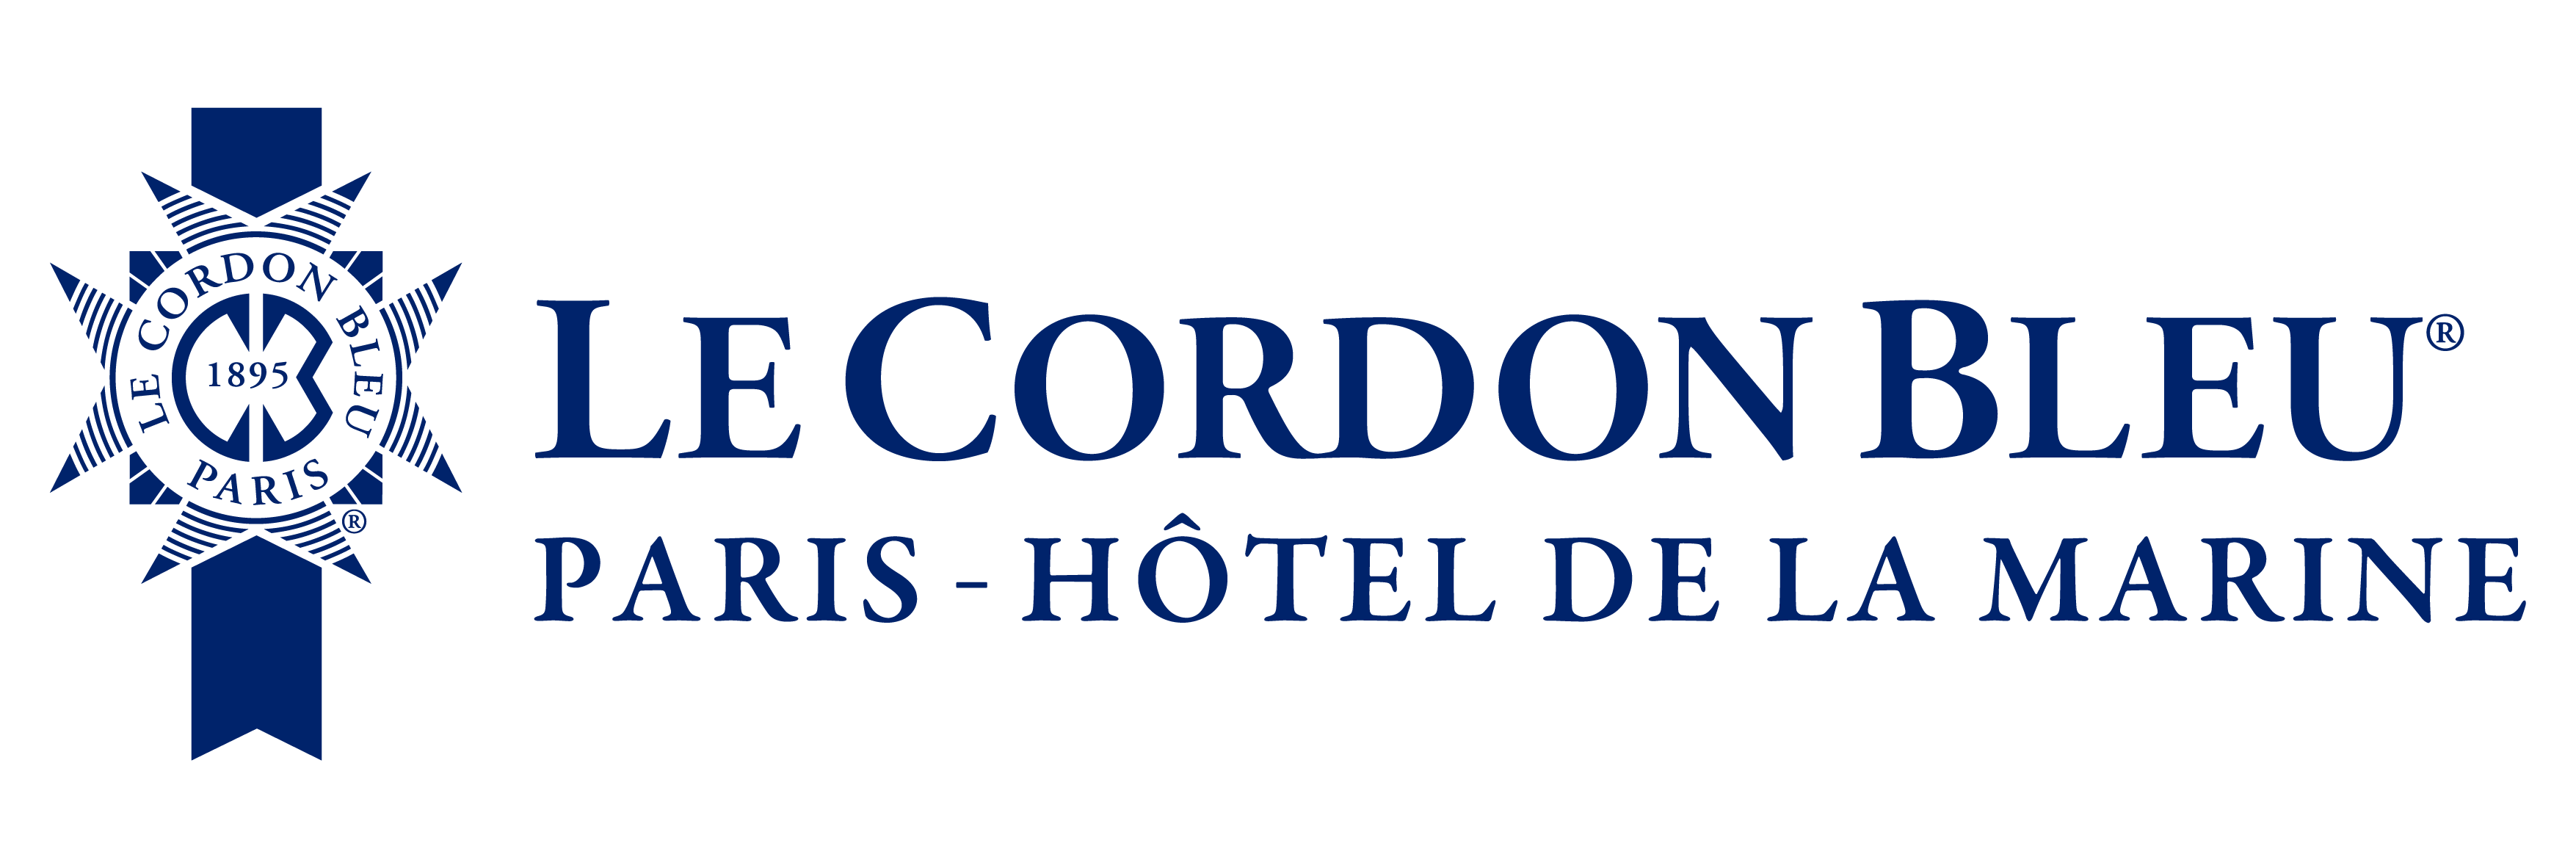 Le Cordon Bleu - Paris - Hôtel de la Marine